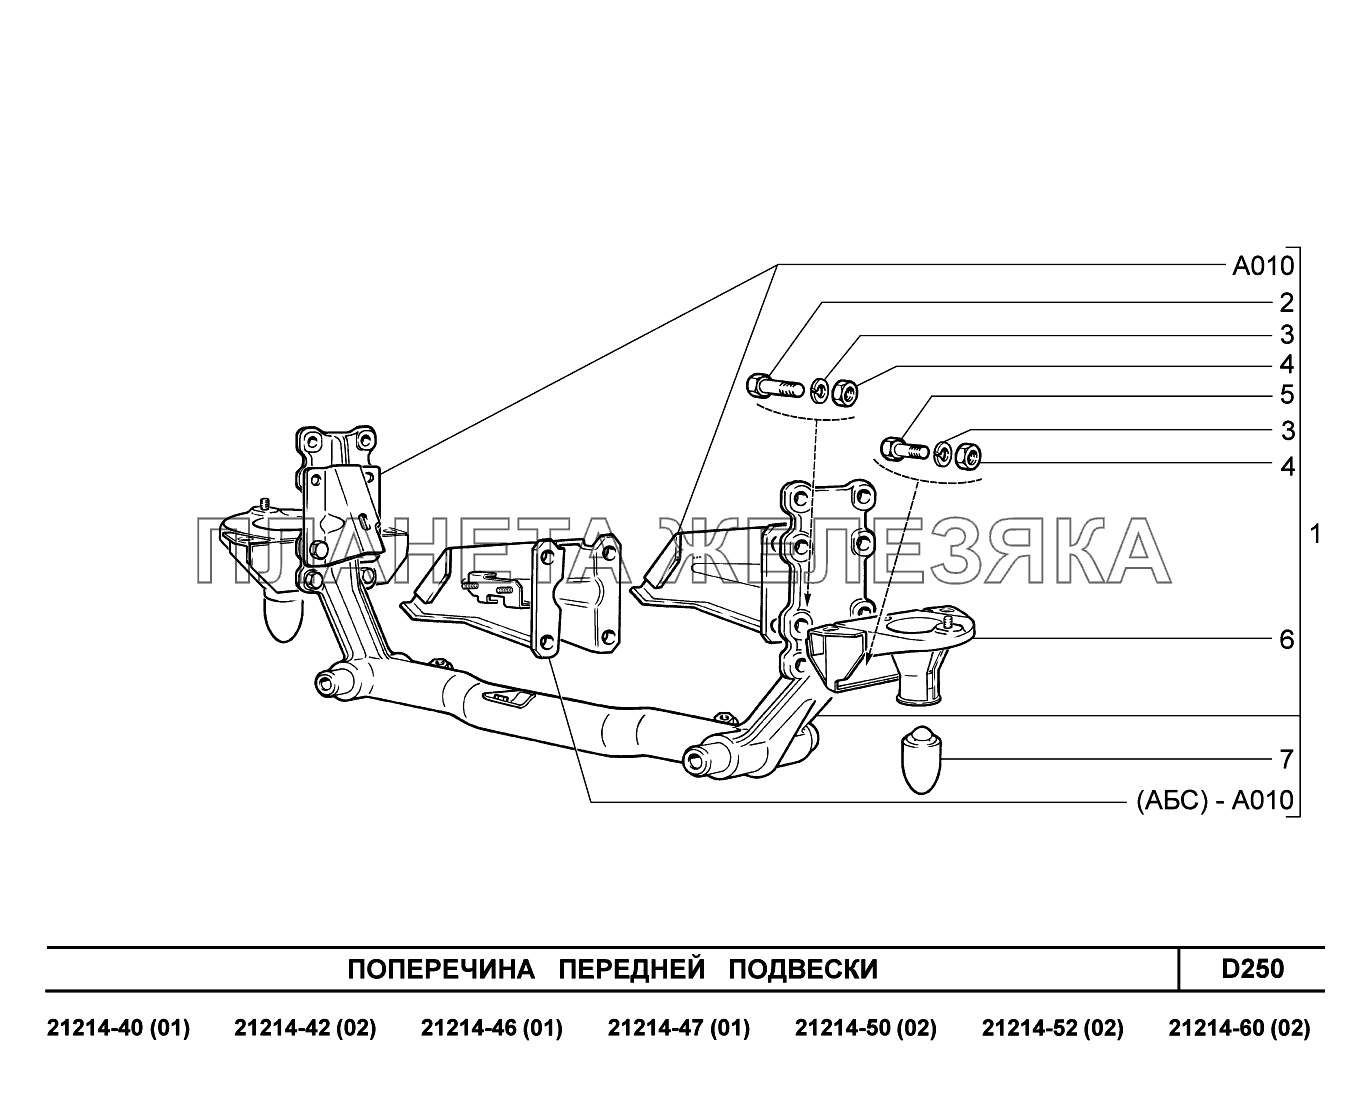 D250. Поперечина передней подвески Lada 4x4 Urban